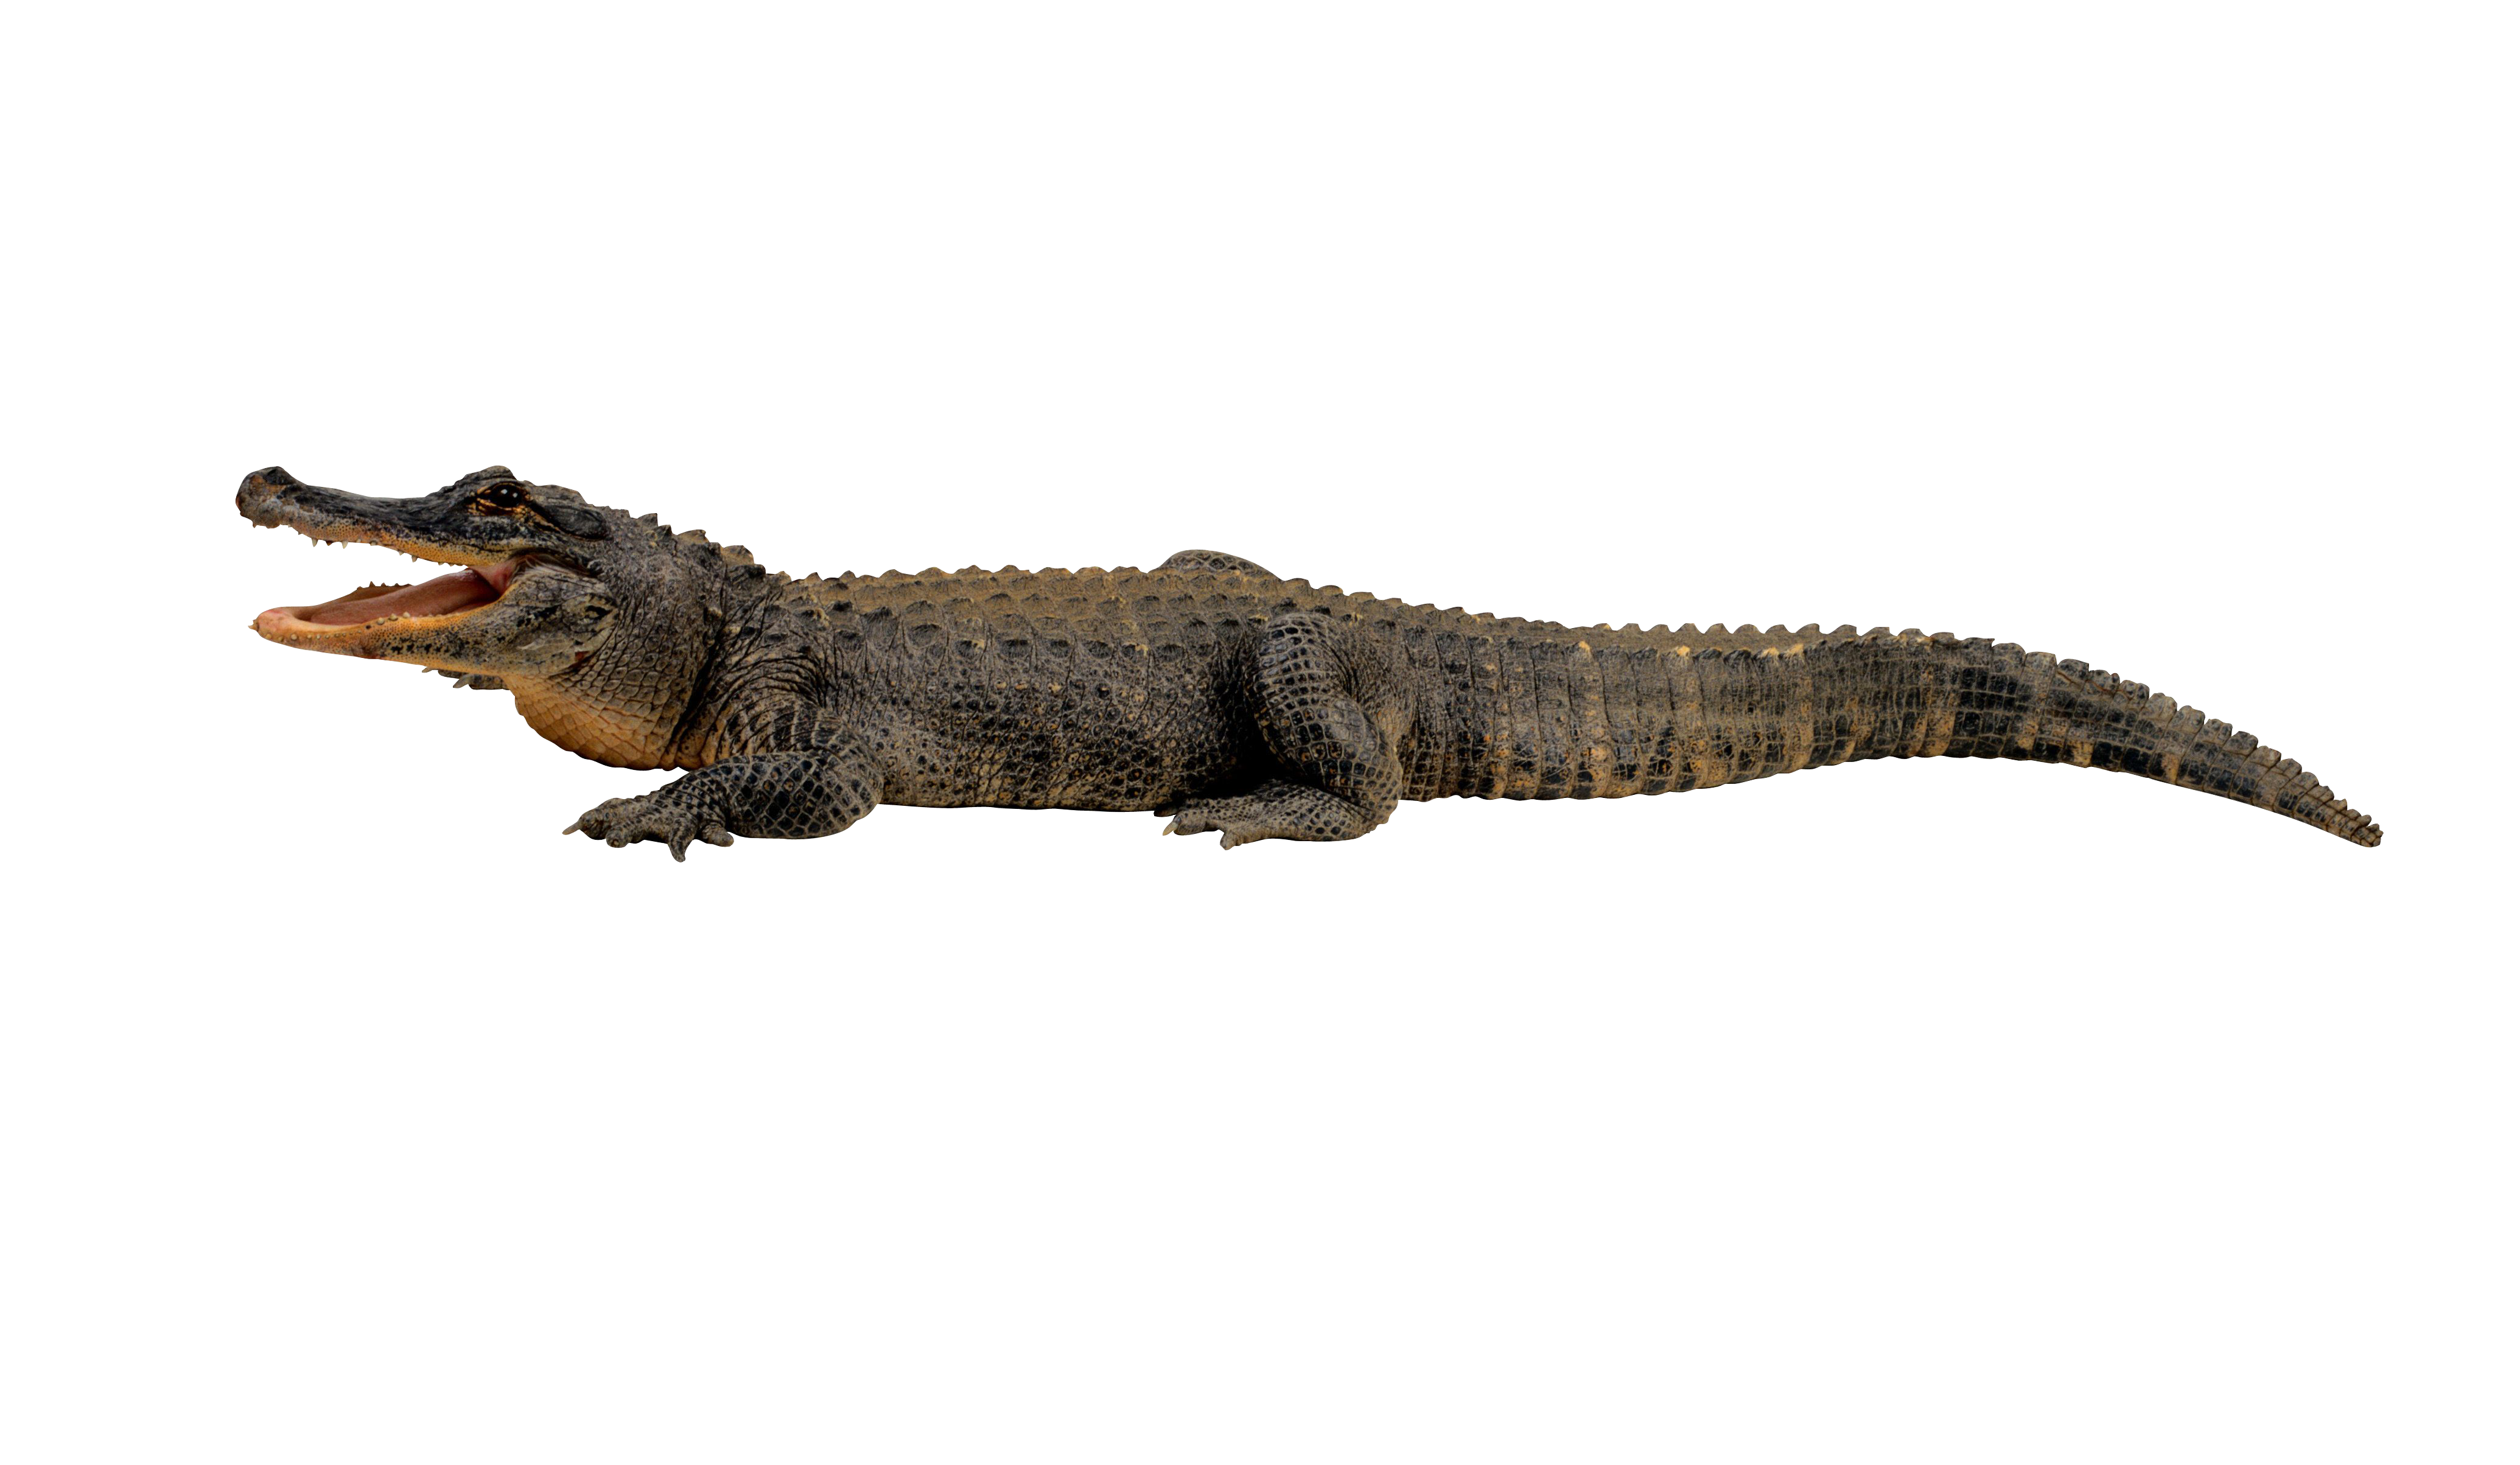 Crocodile PNG - Crocodile PNG